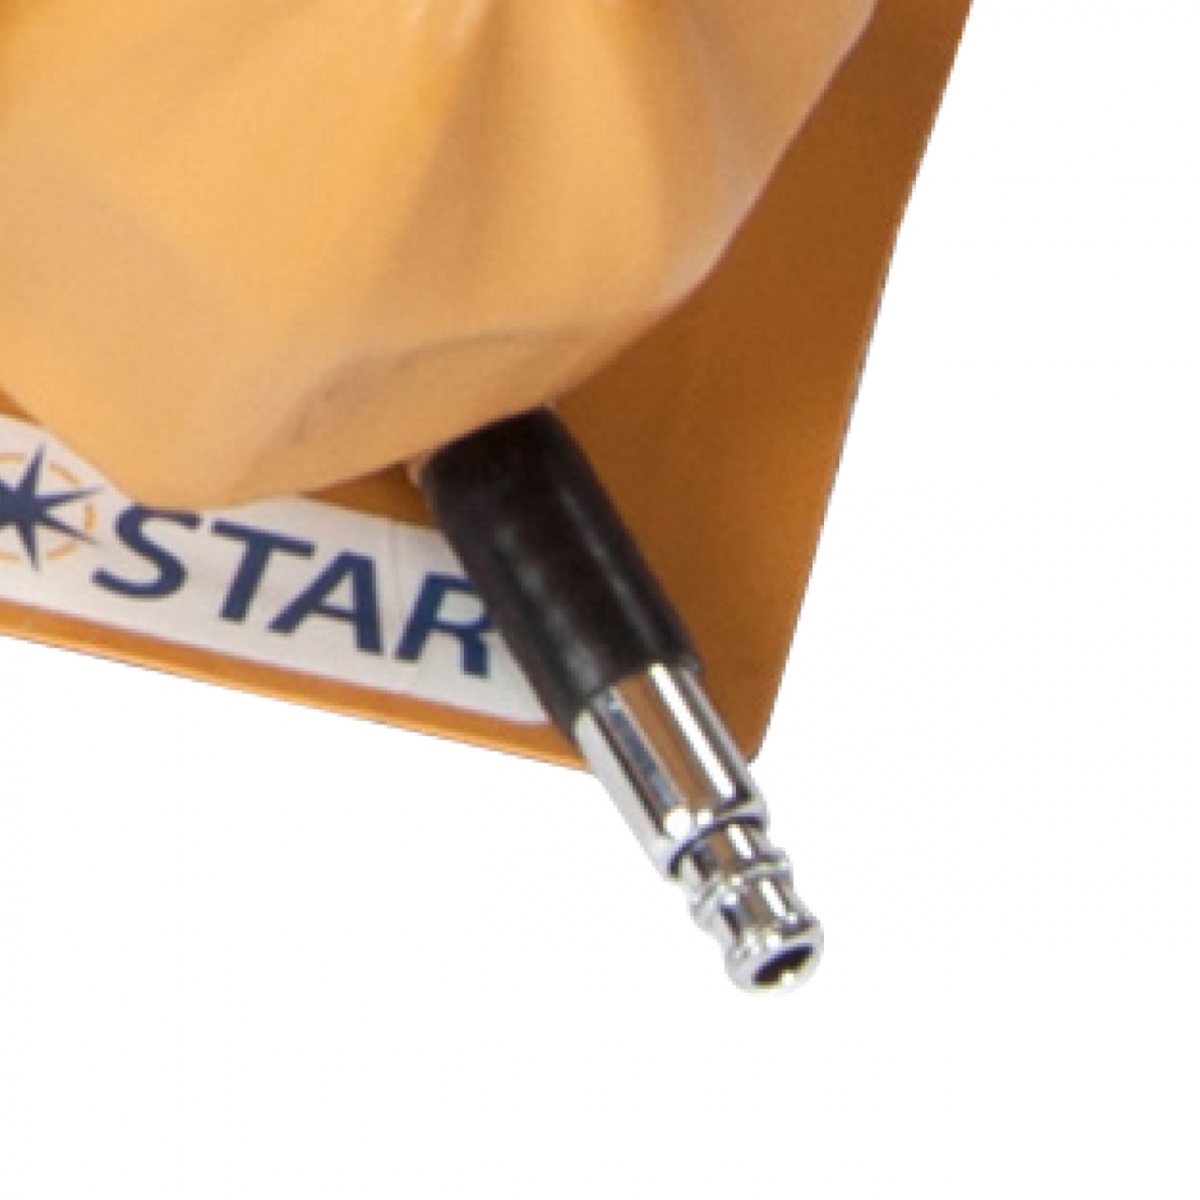 Etac Star Standard Air poduszka pneumatyczna przeciwodleżynowa